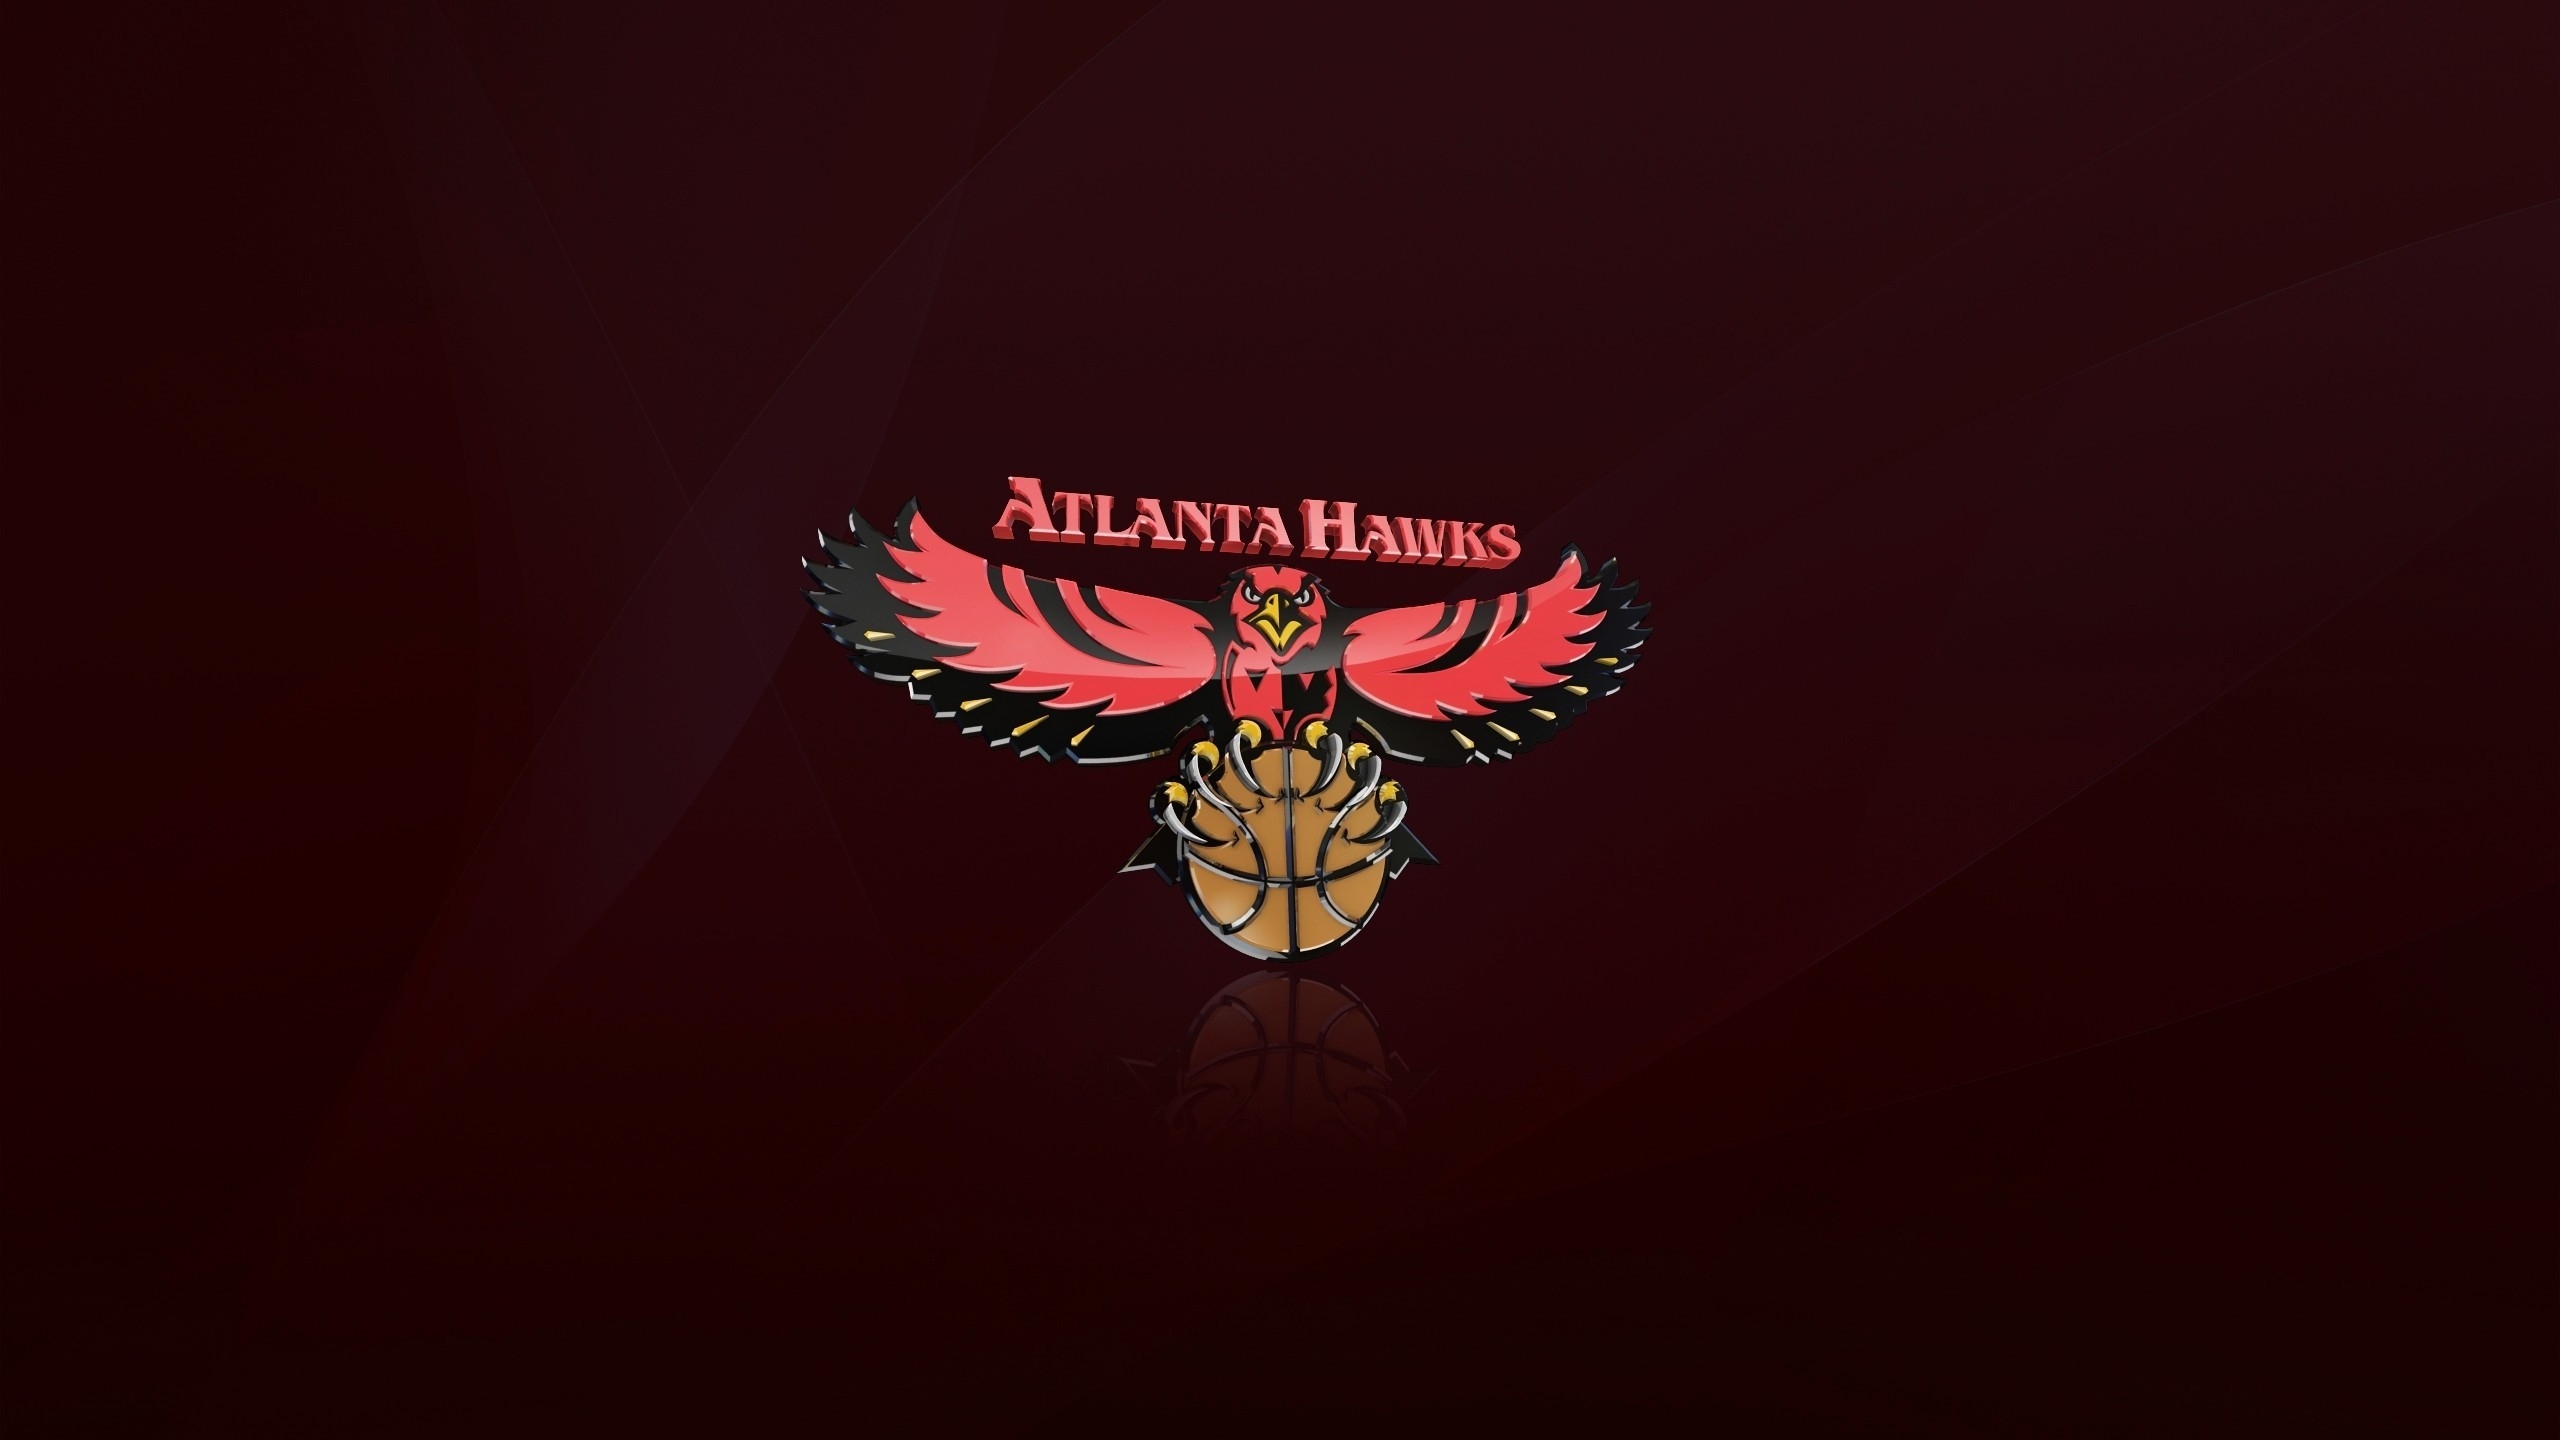 Atlanta Hawks Logo for 2560x1440 HDTV resolution